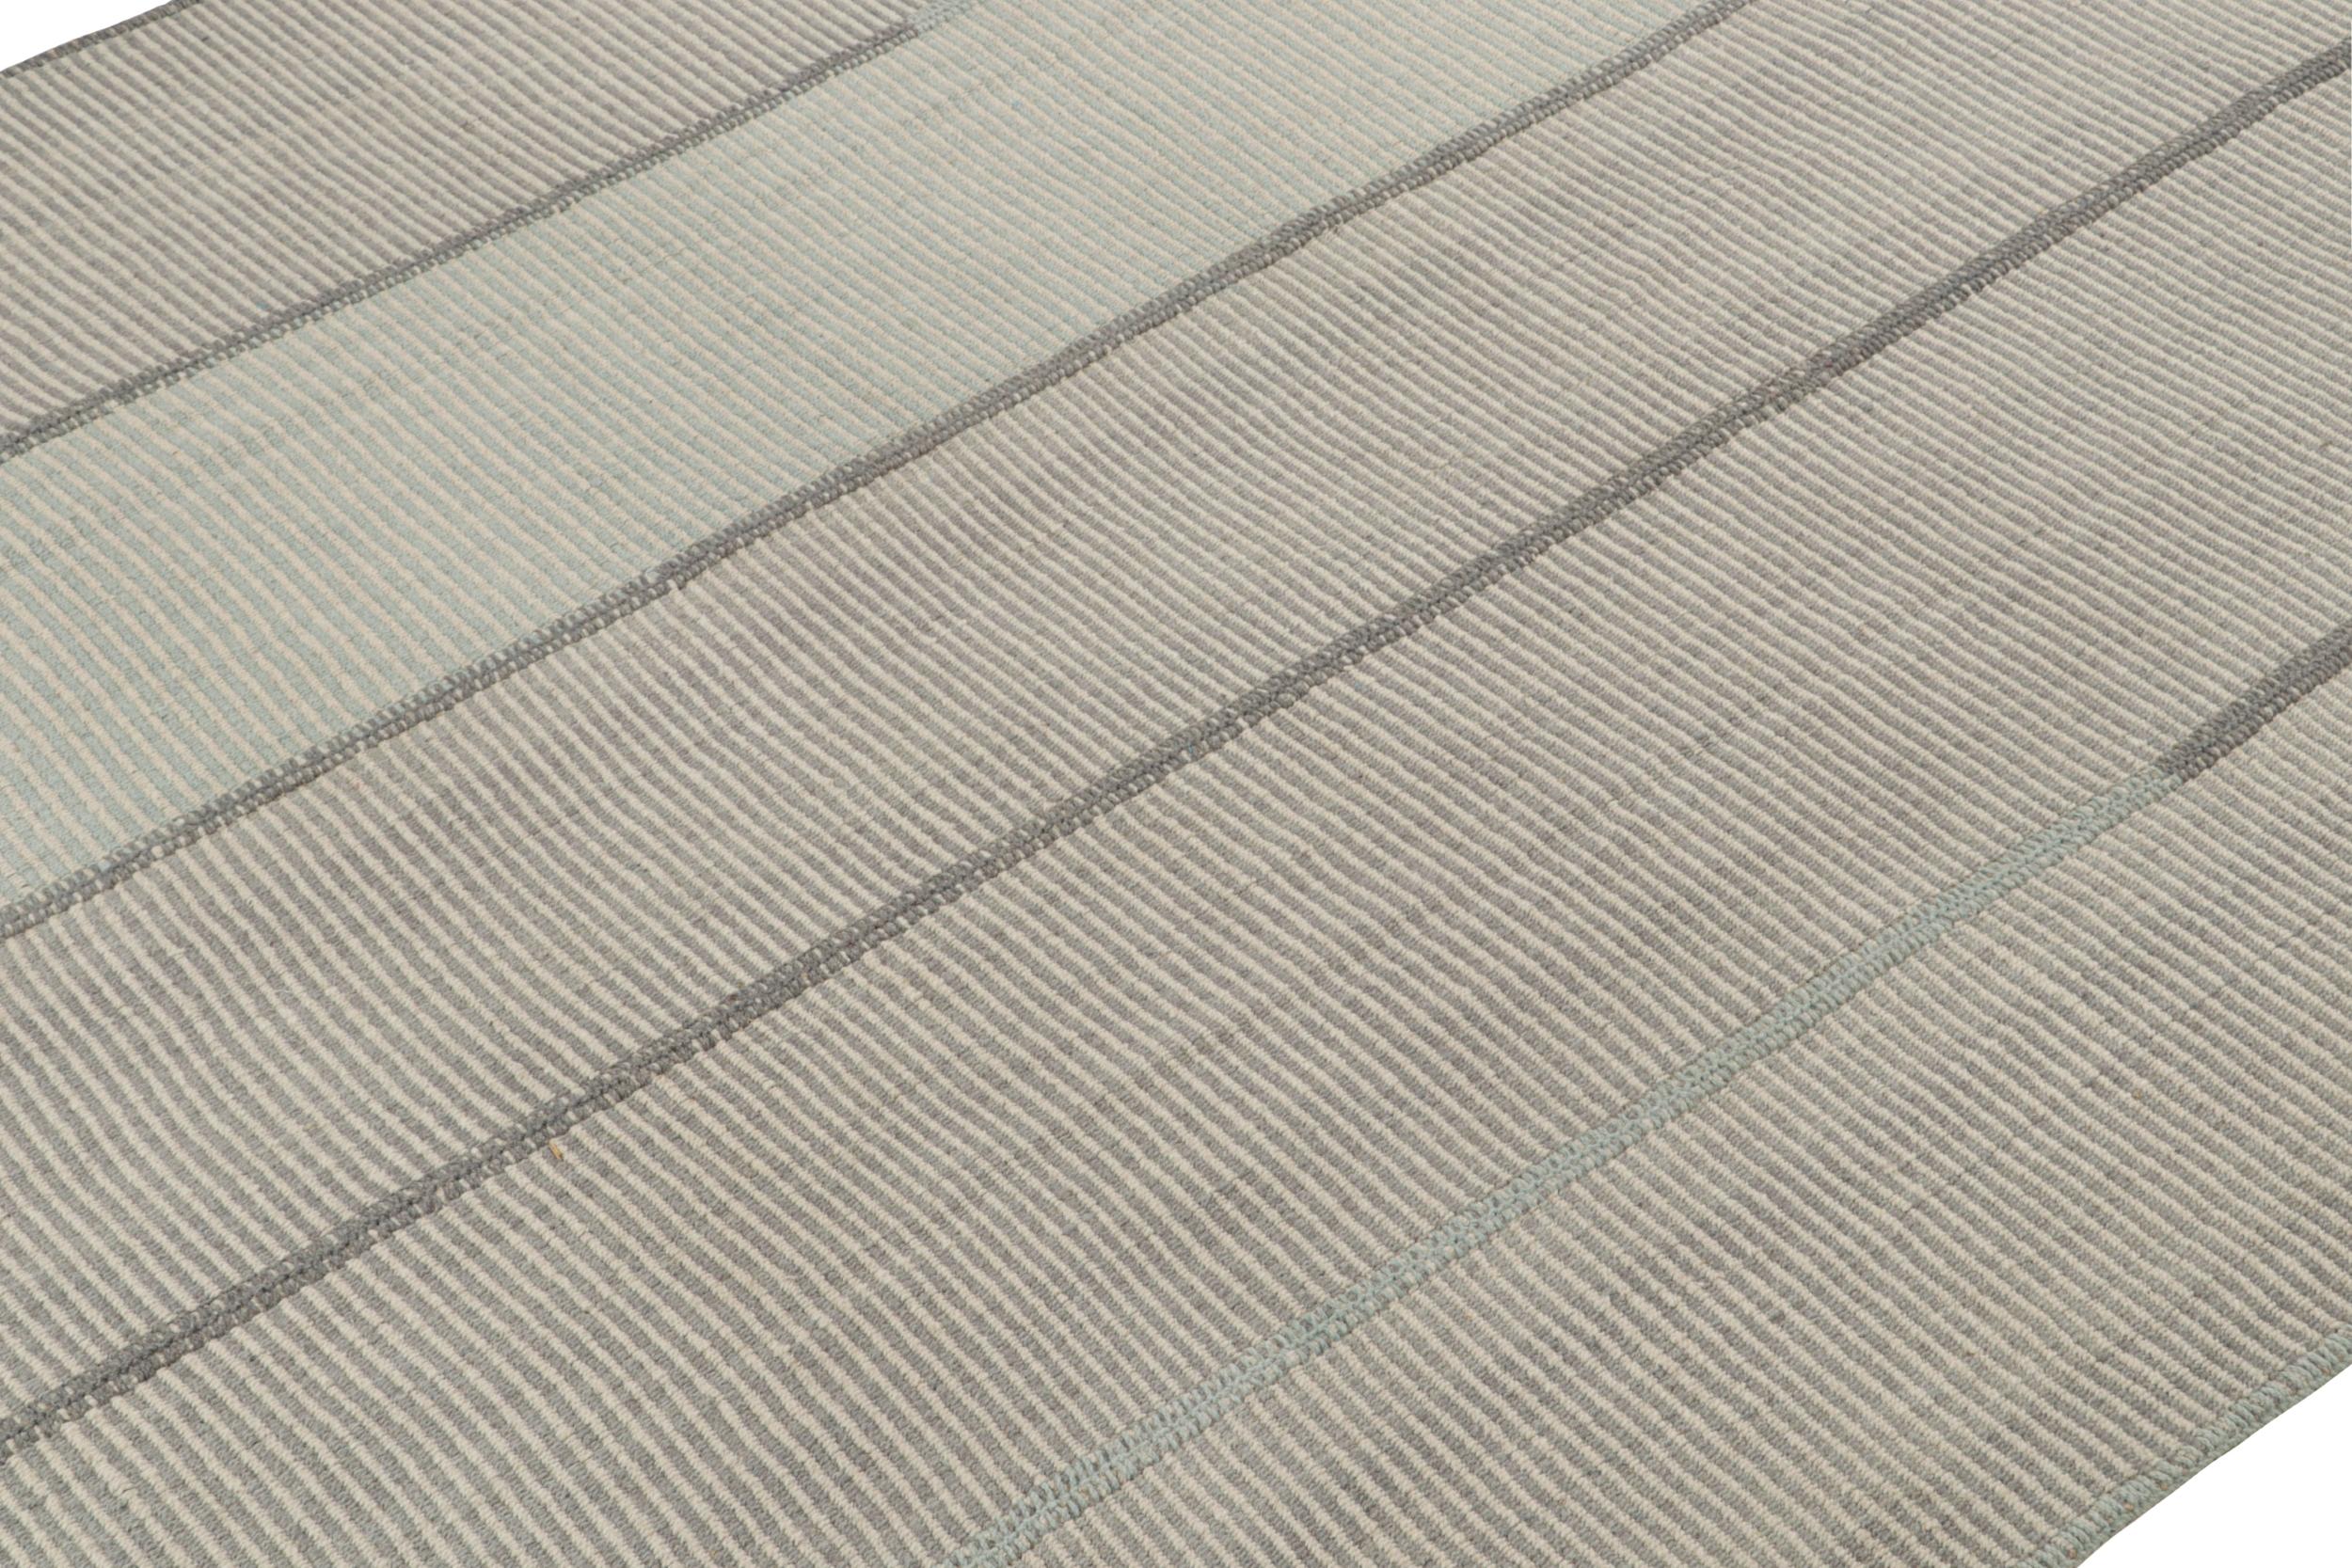 Handgewebter 8x10-Kilim aus Wolle, aus einer kühnen neuen Linie zeitgenössischer Flachgewebe von Rug & Kilim.

Über das Design: 

Unser neuester 